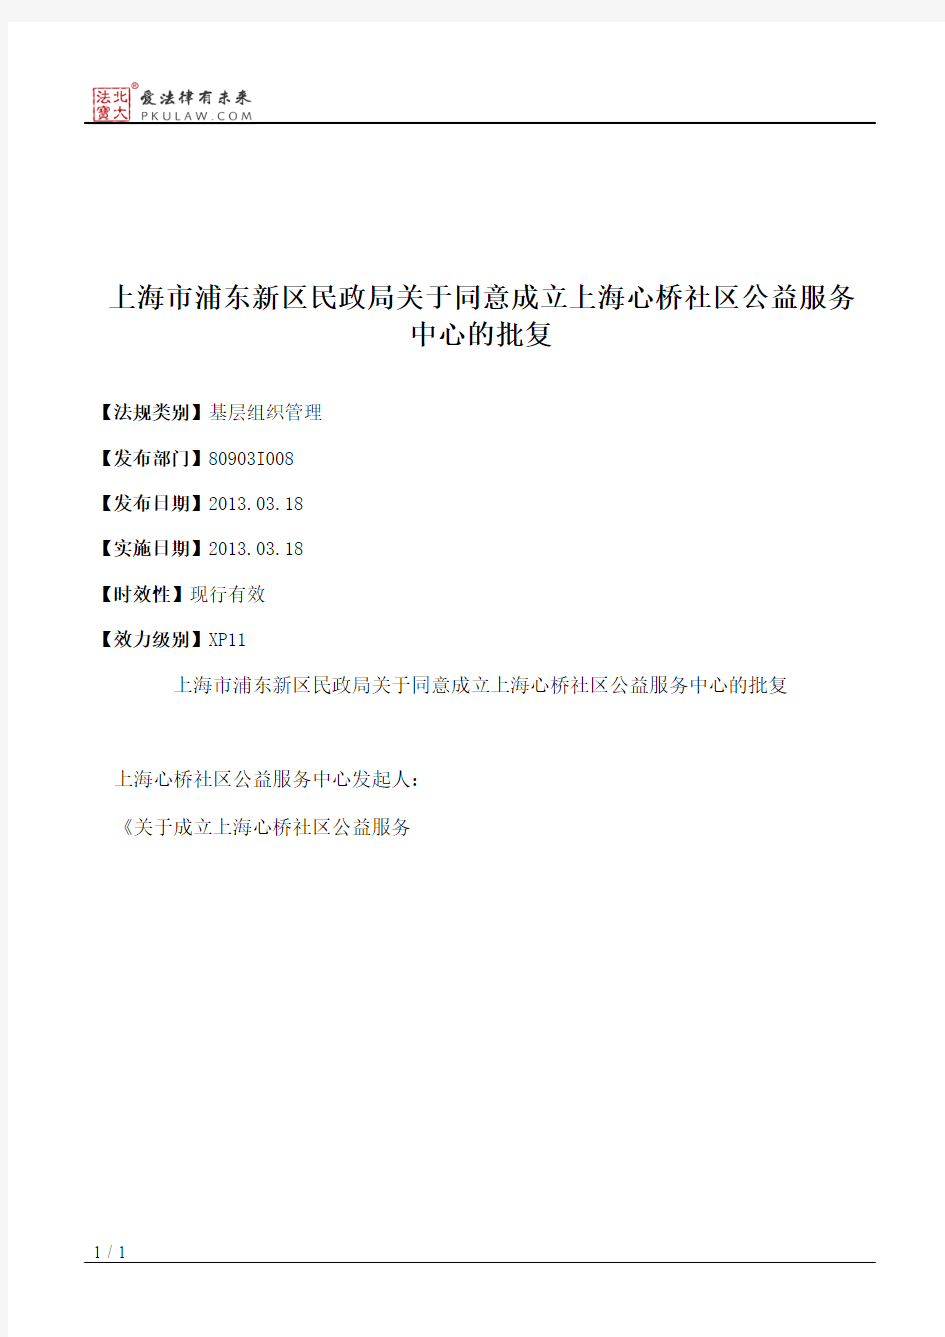 上海市浦东新区民政局关于同意成立上海心桥社区公益服务中心的批复